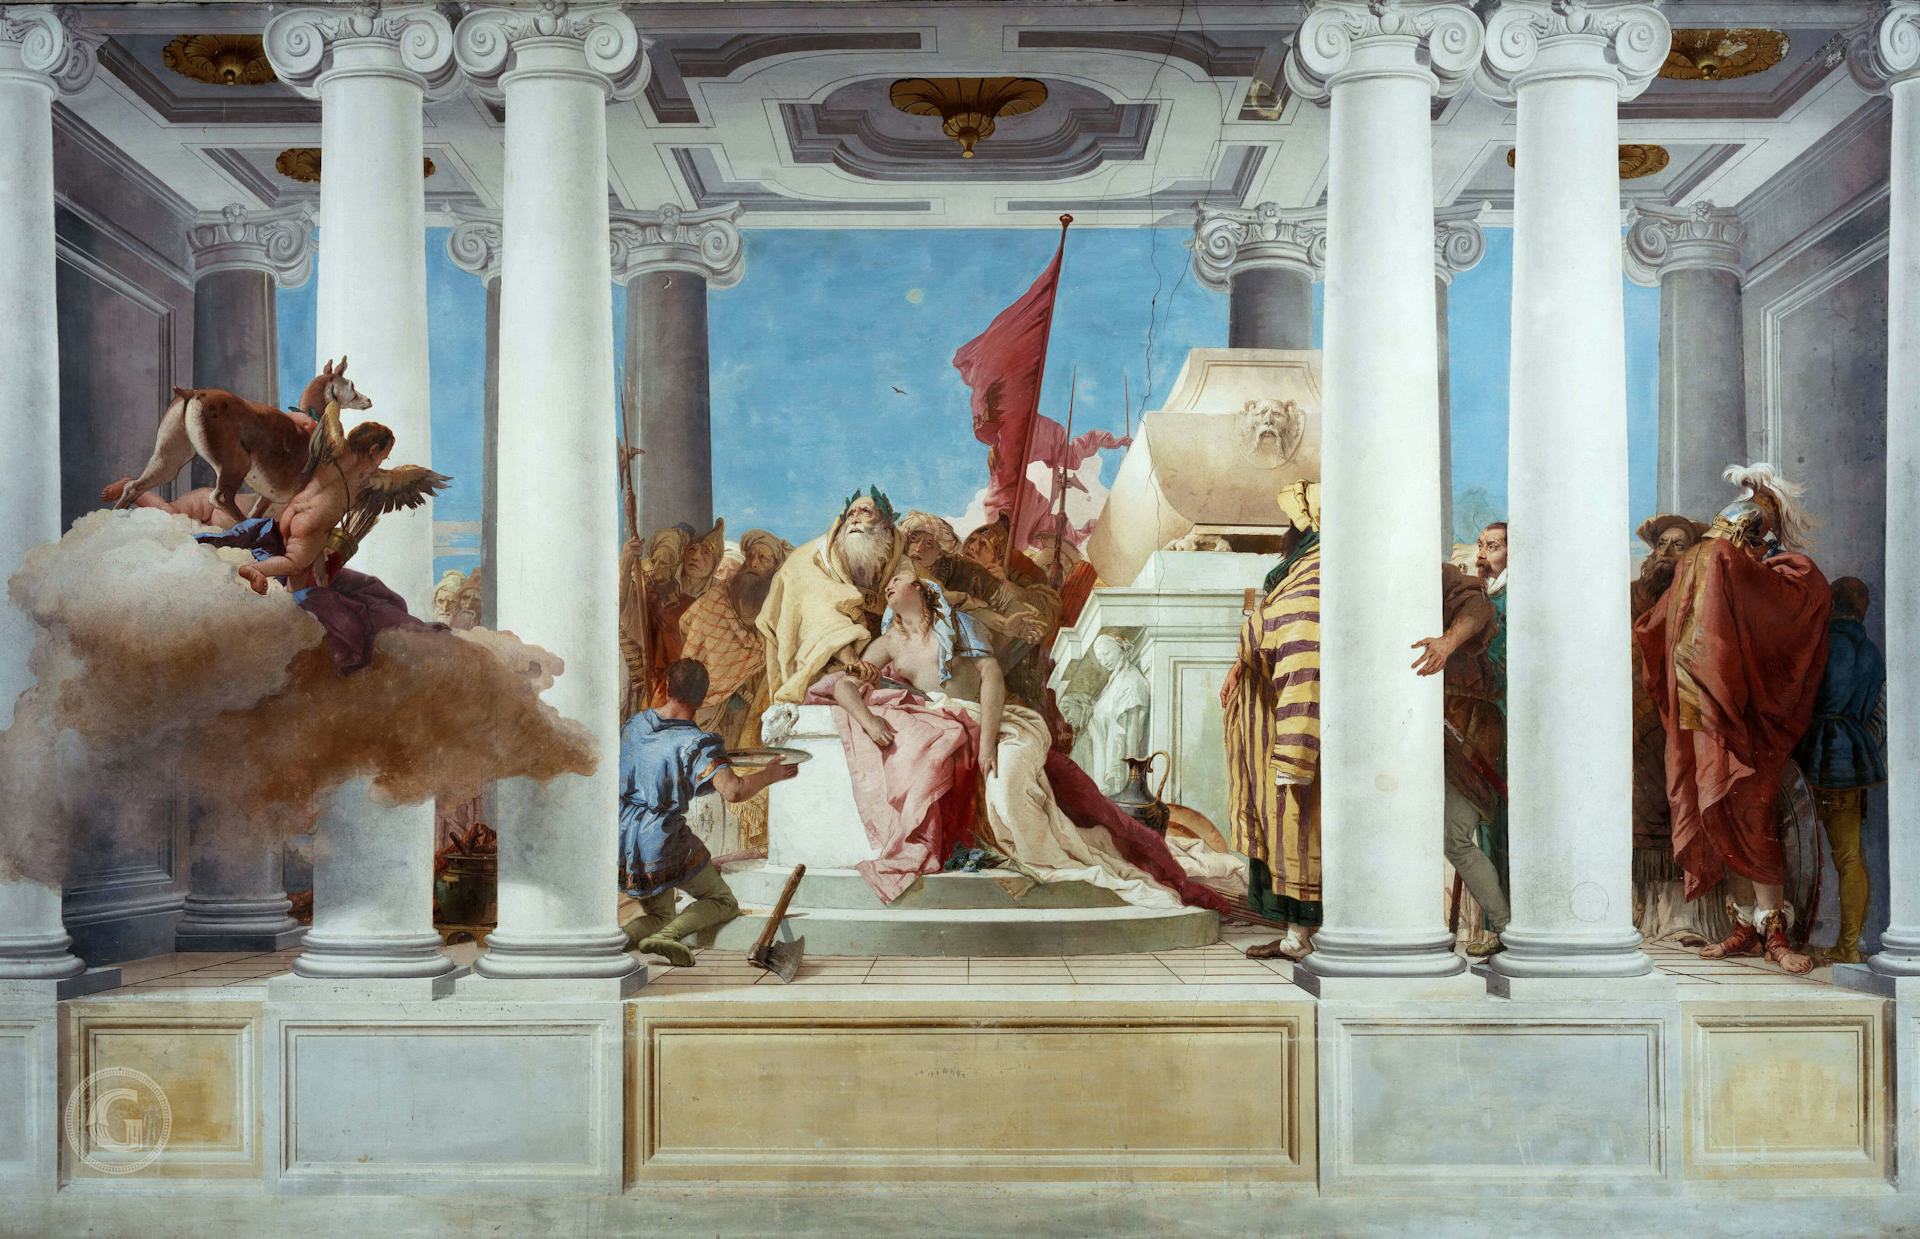 The Sacrifice of Iphigenia by Giovanni Battista Tiepolo